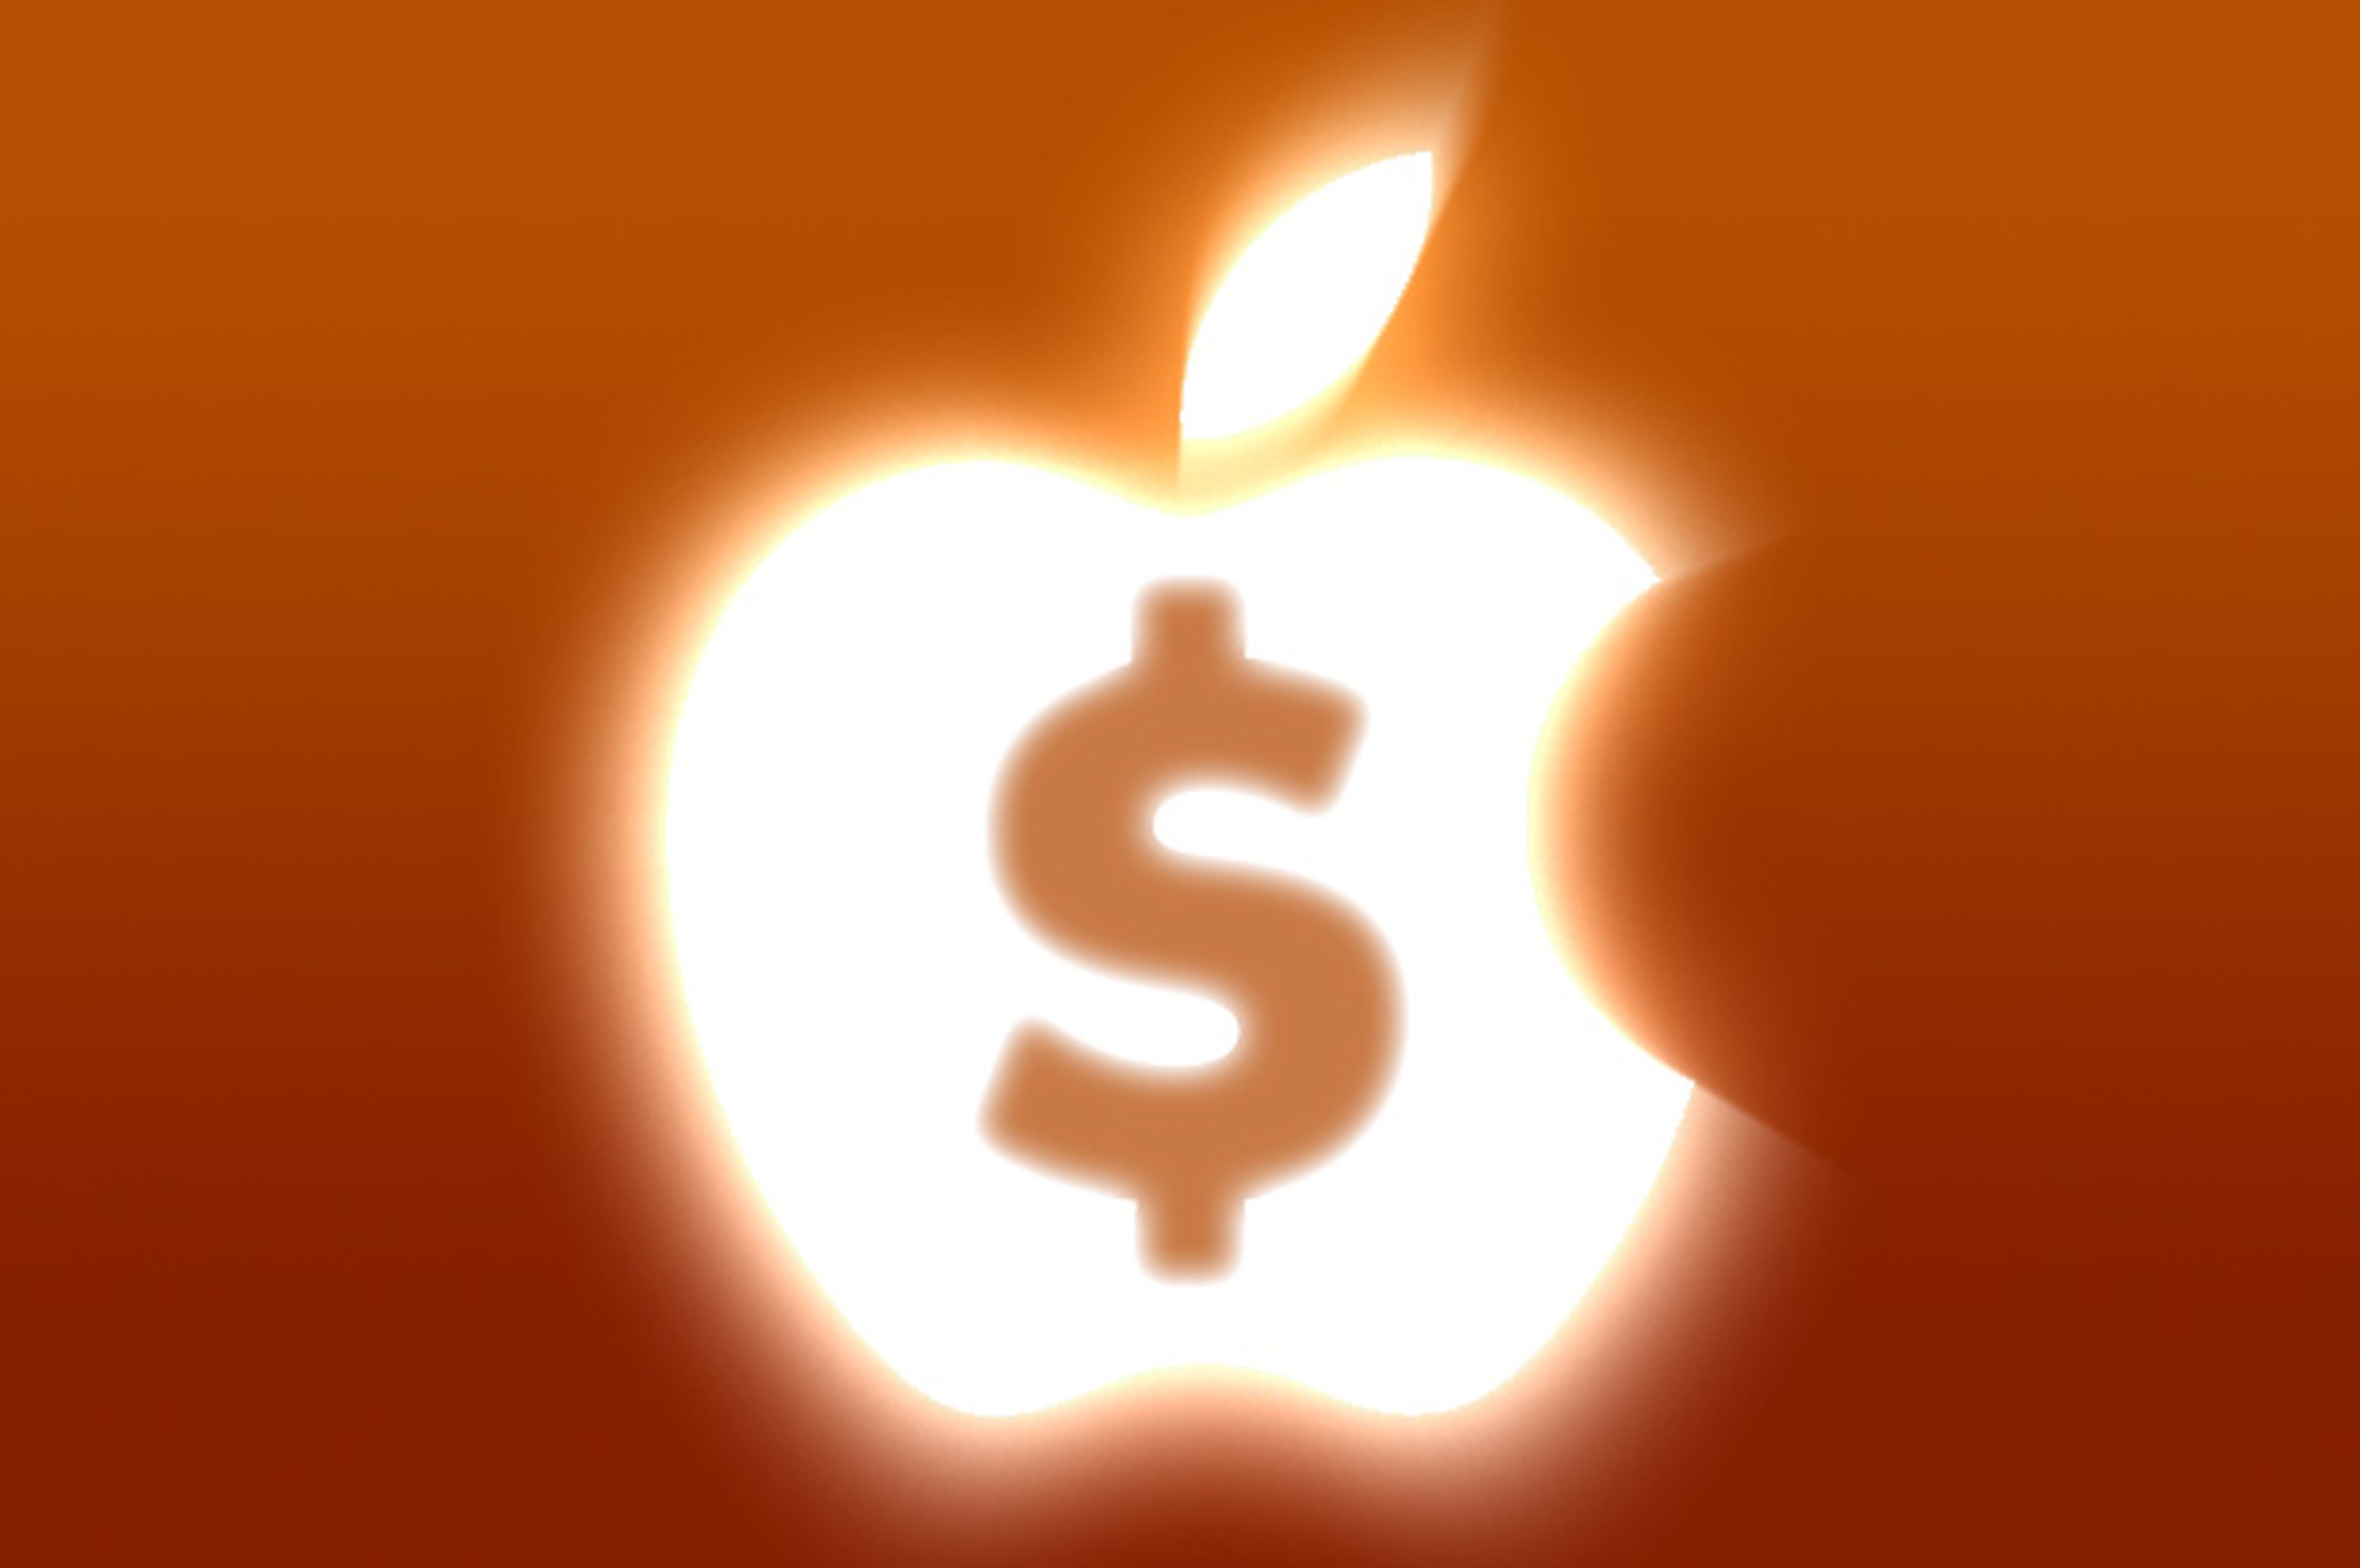 31 millones de iPhones vendidos: ¡Nuevo record para Apple!